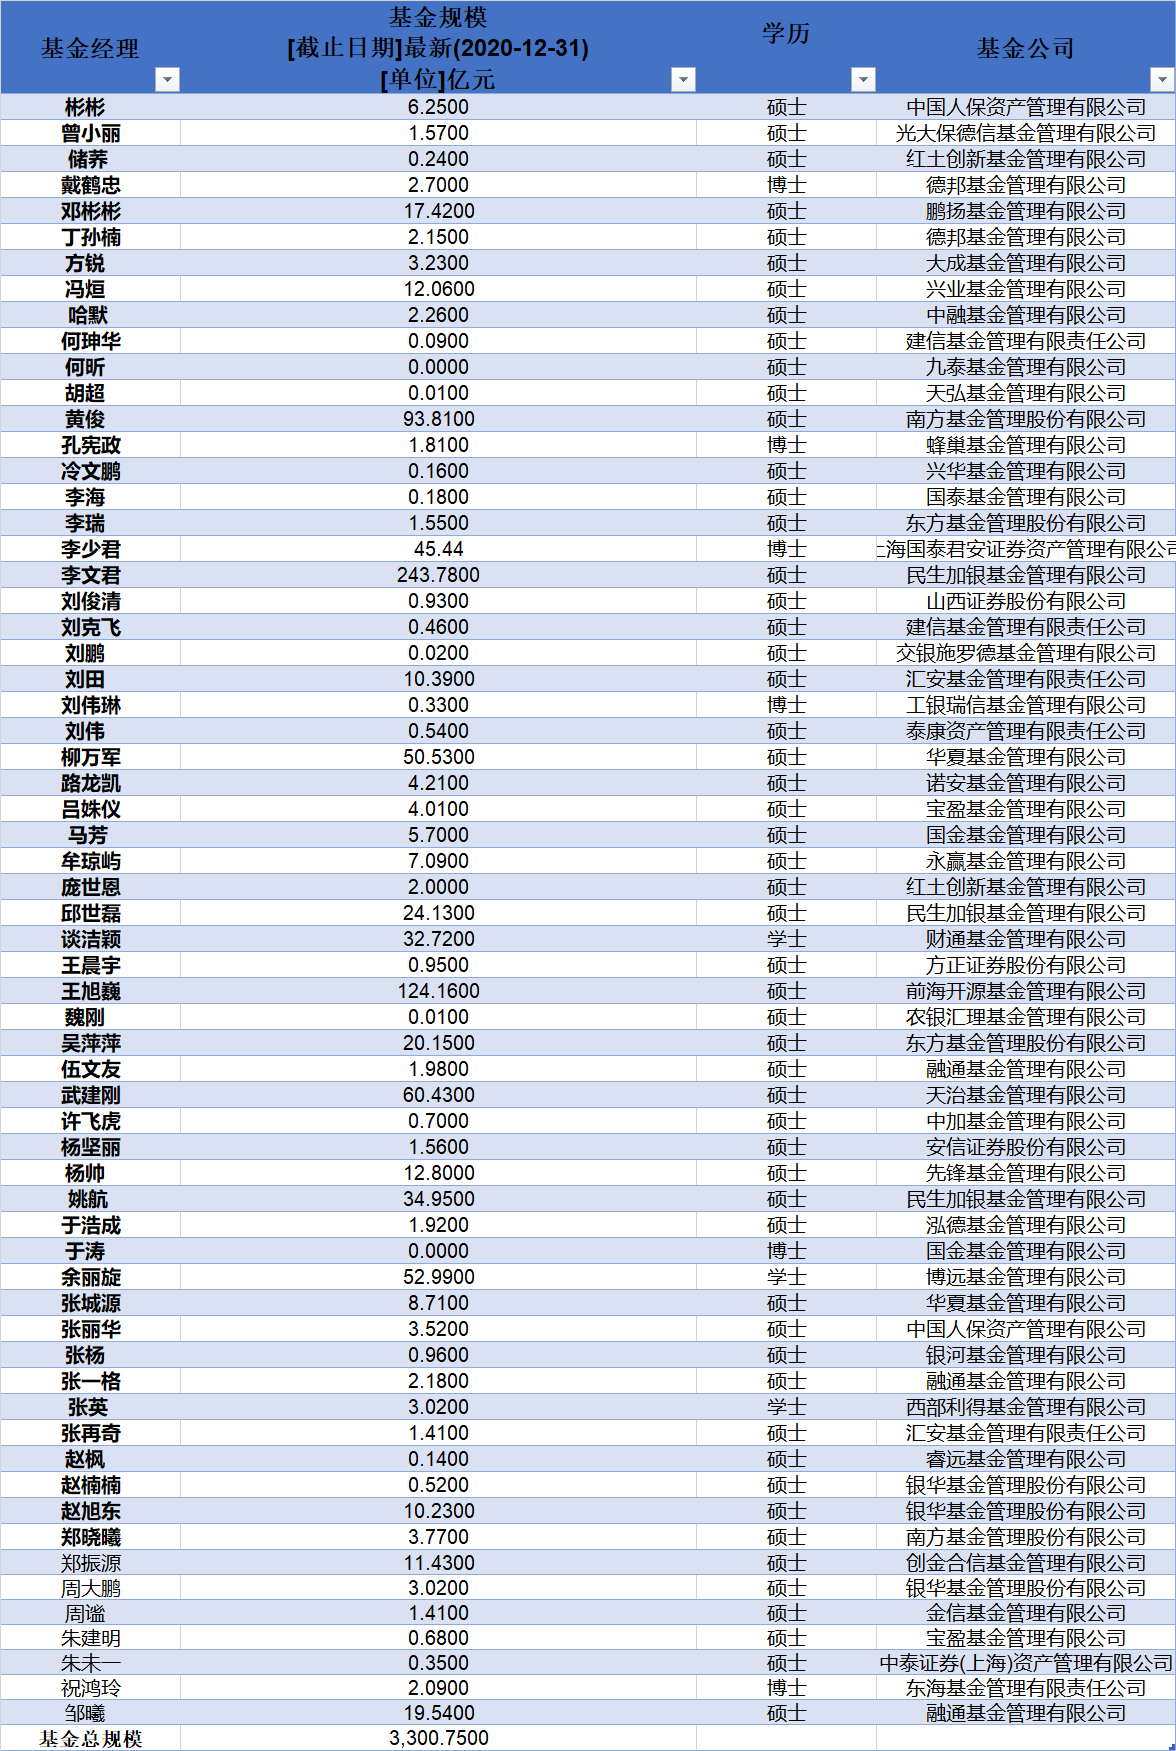 中国人民大学基金经理人数及持有基金规模统计 